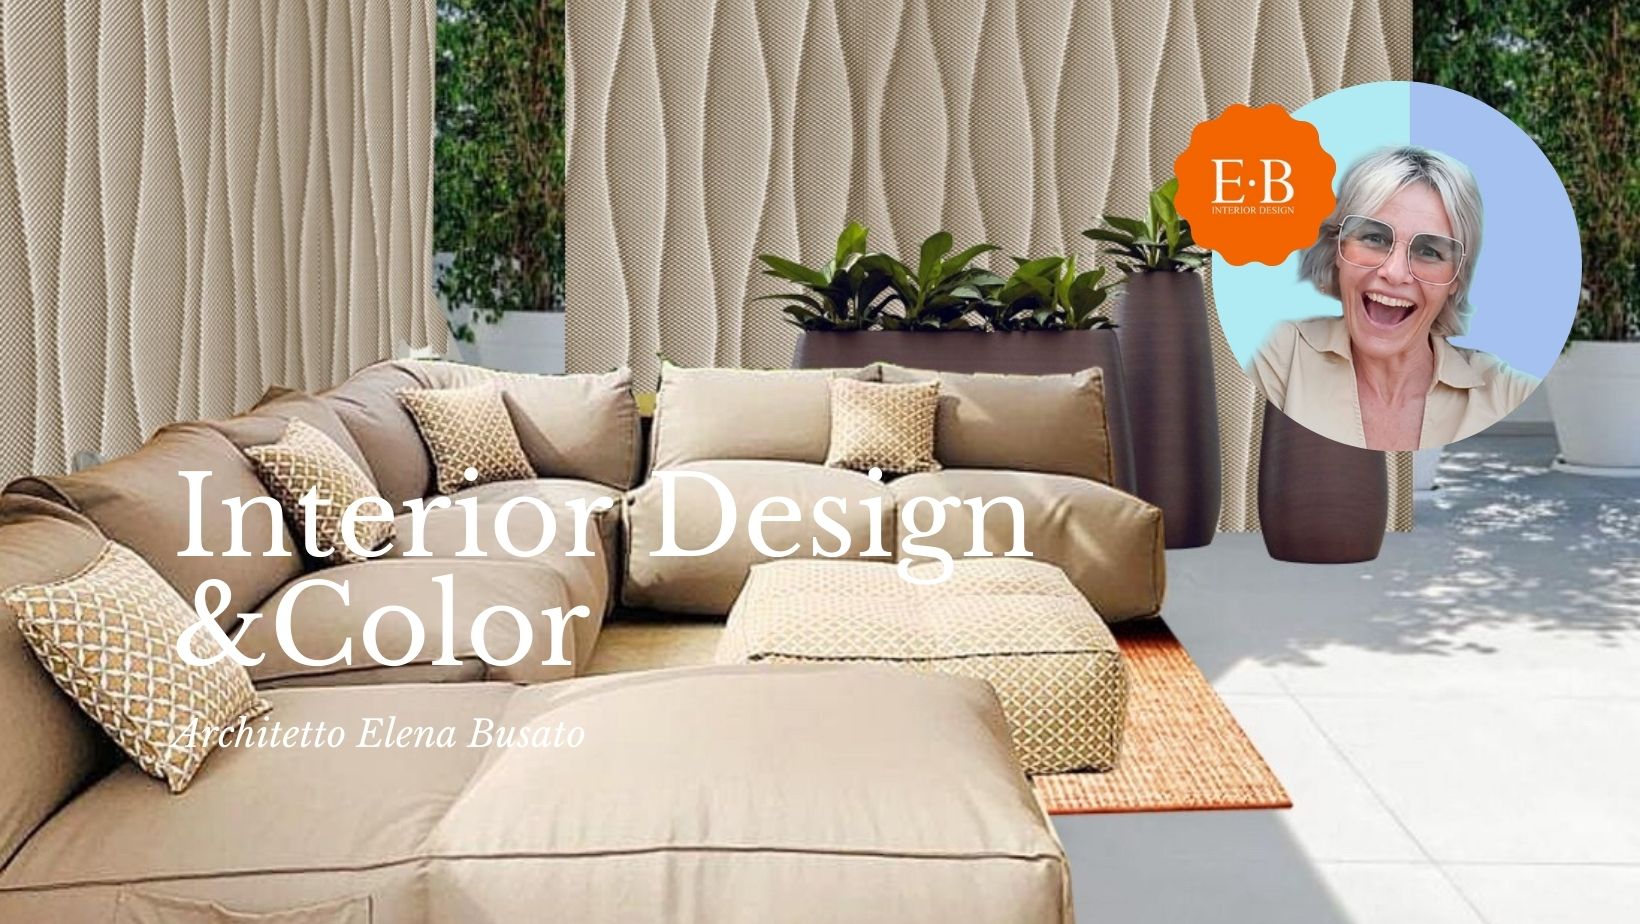 Interior_Design_Color_ARCHITETTI_ELENA_BUSATO.JPG